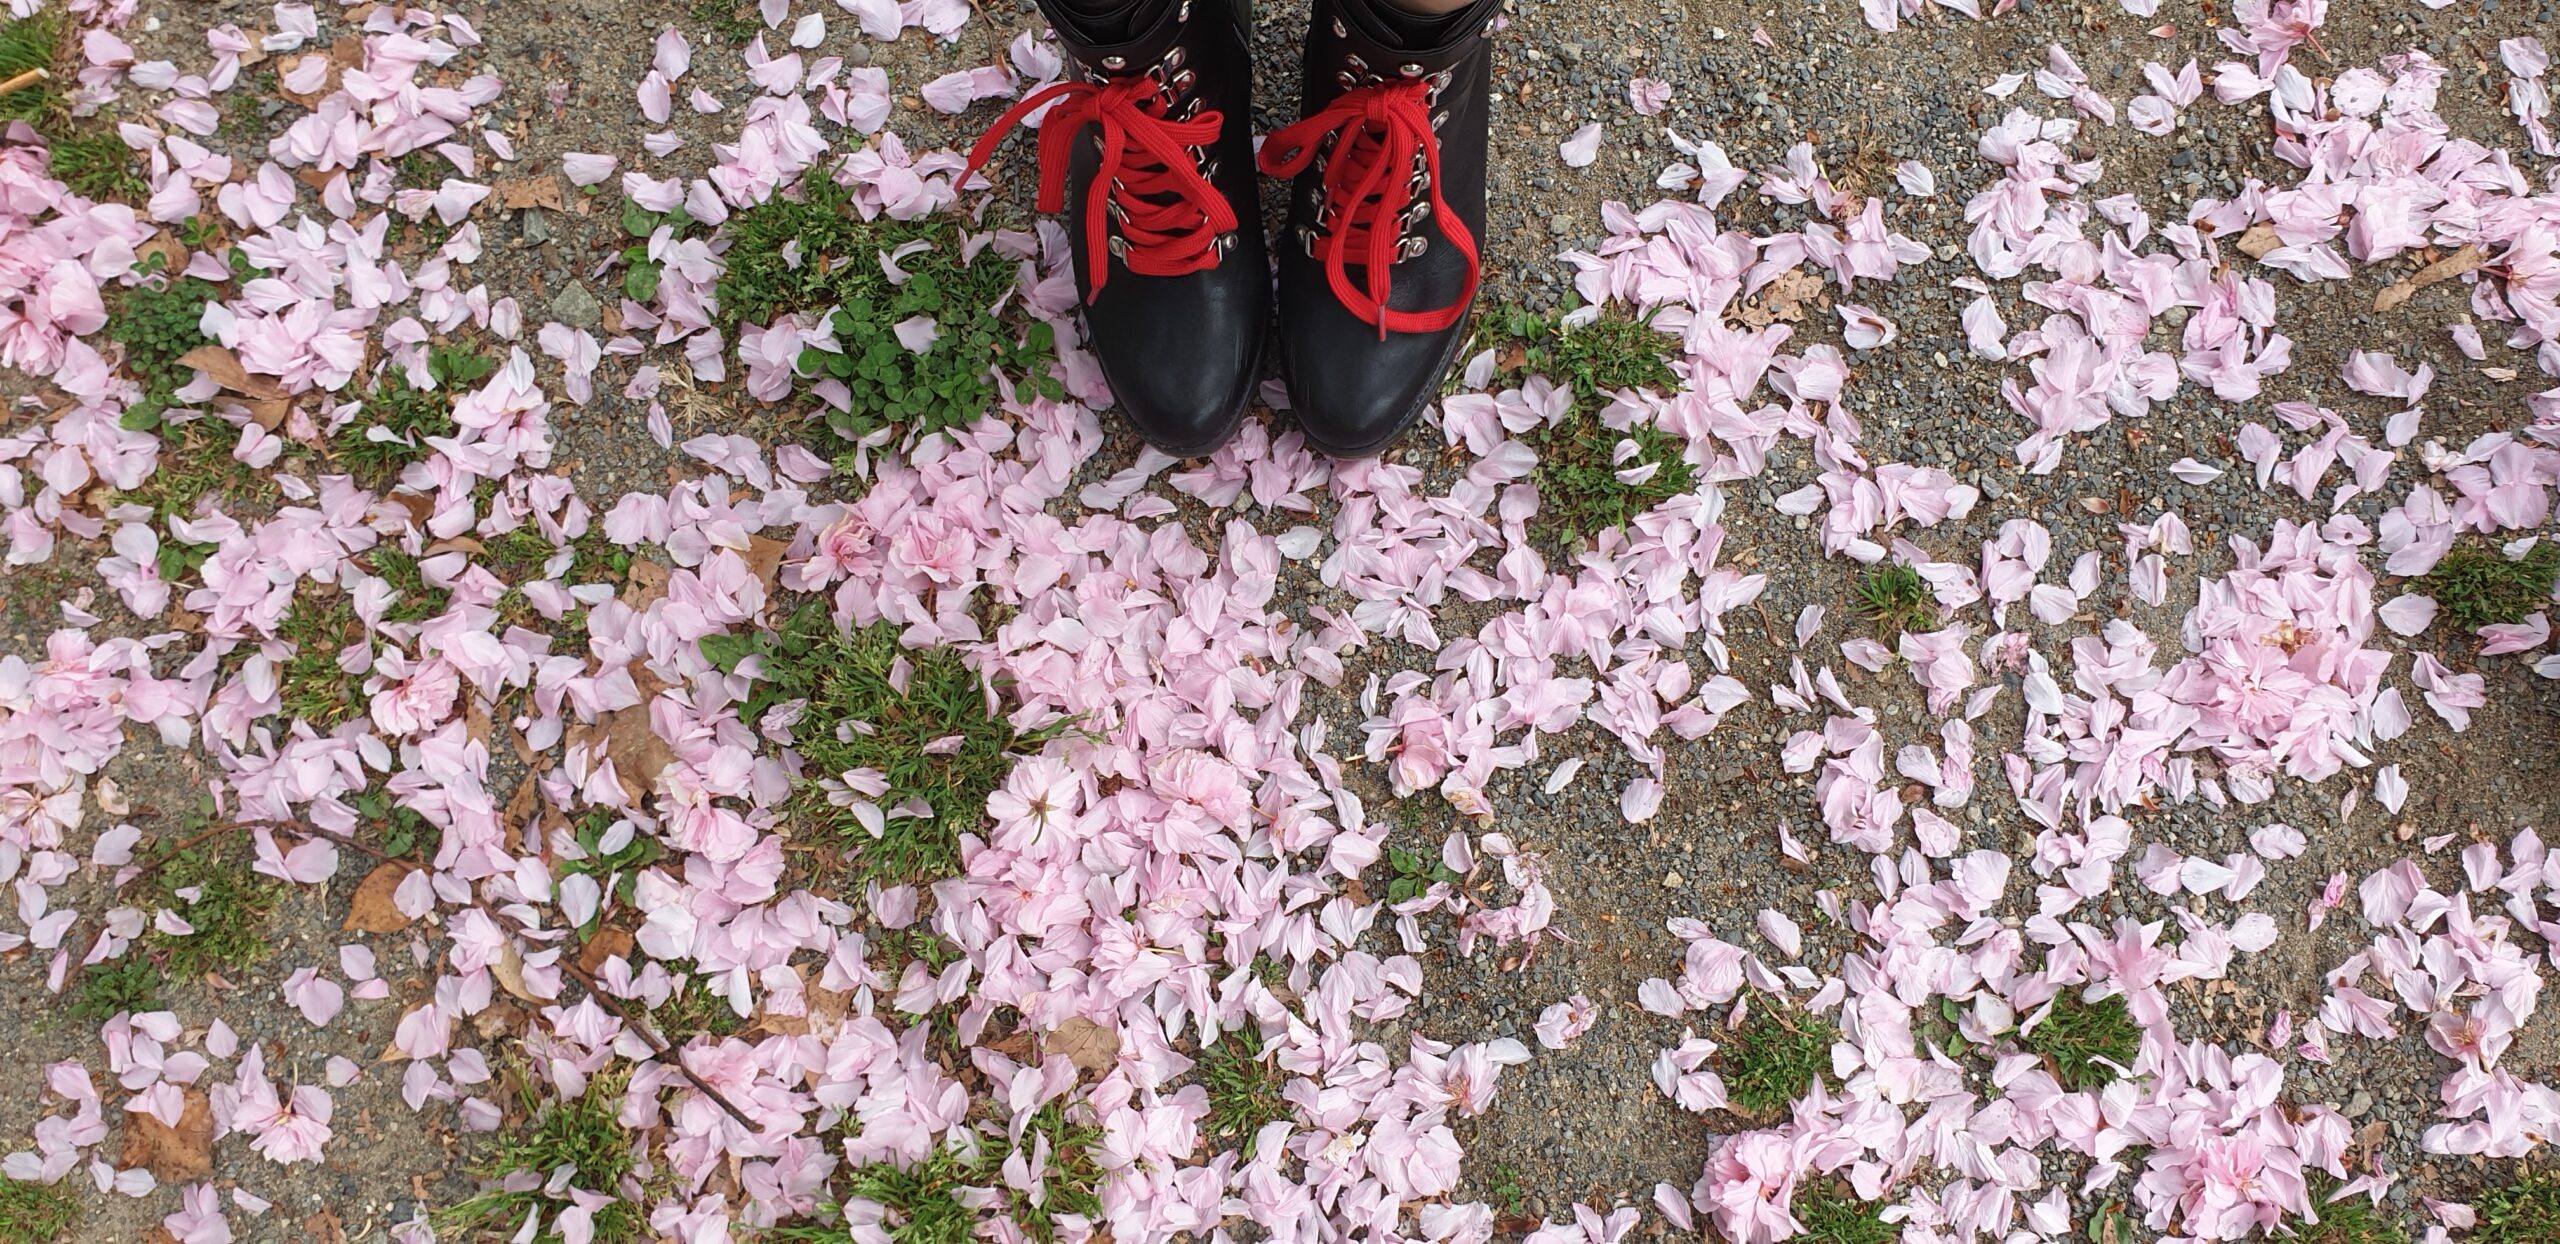 photo de pétale de cerisier rose sur le sol marron avec des touffe d'herbe par endroit. on voit des bottes noir avec des lacets rouges en haut.